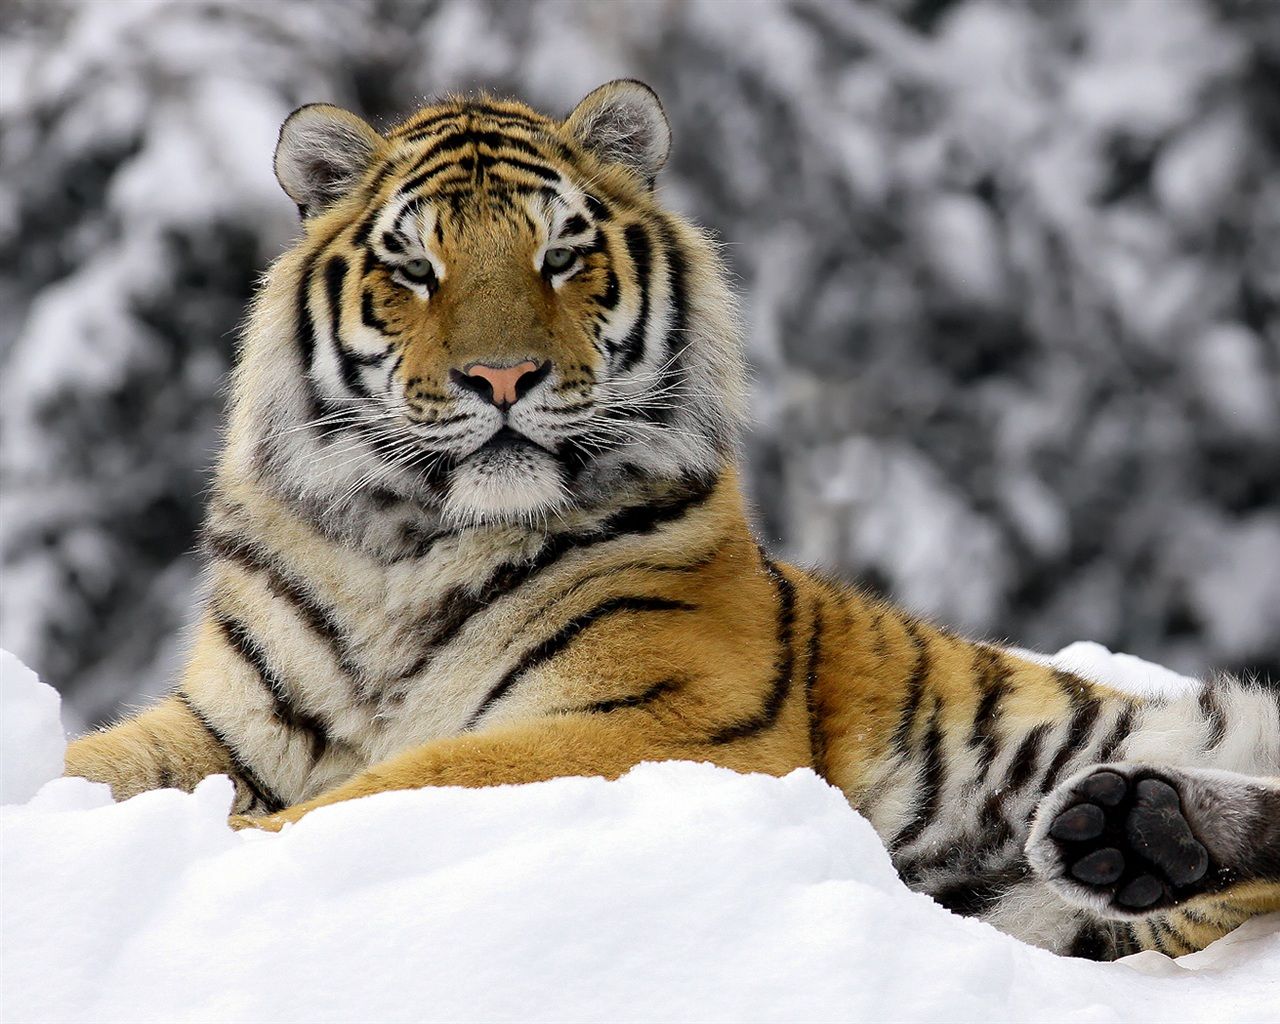 Tiger in Winter Wallpaper 1280x1024 resolution wallpaper